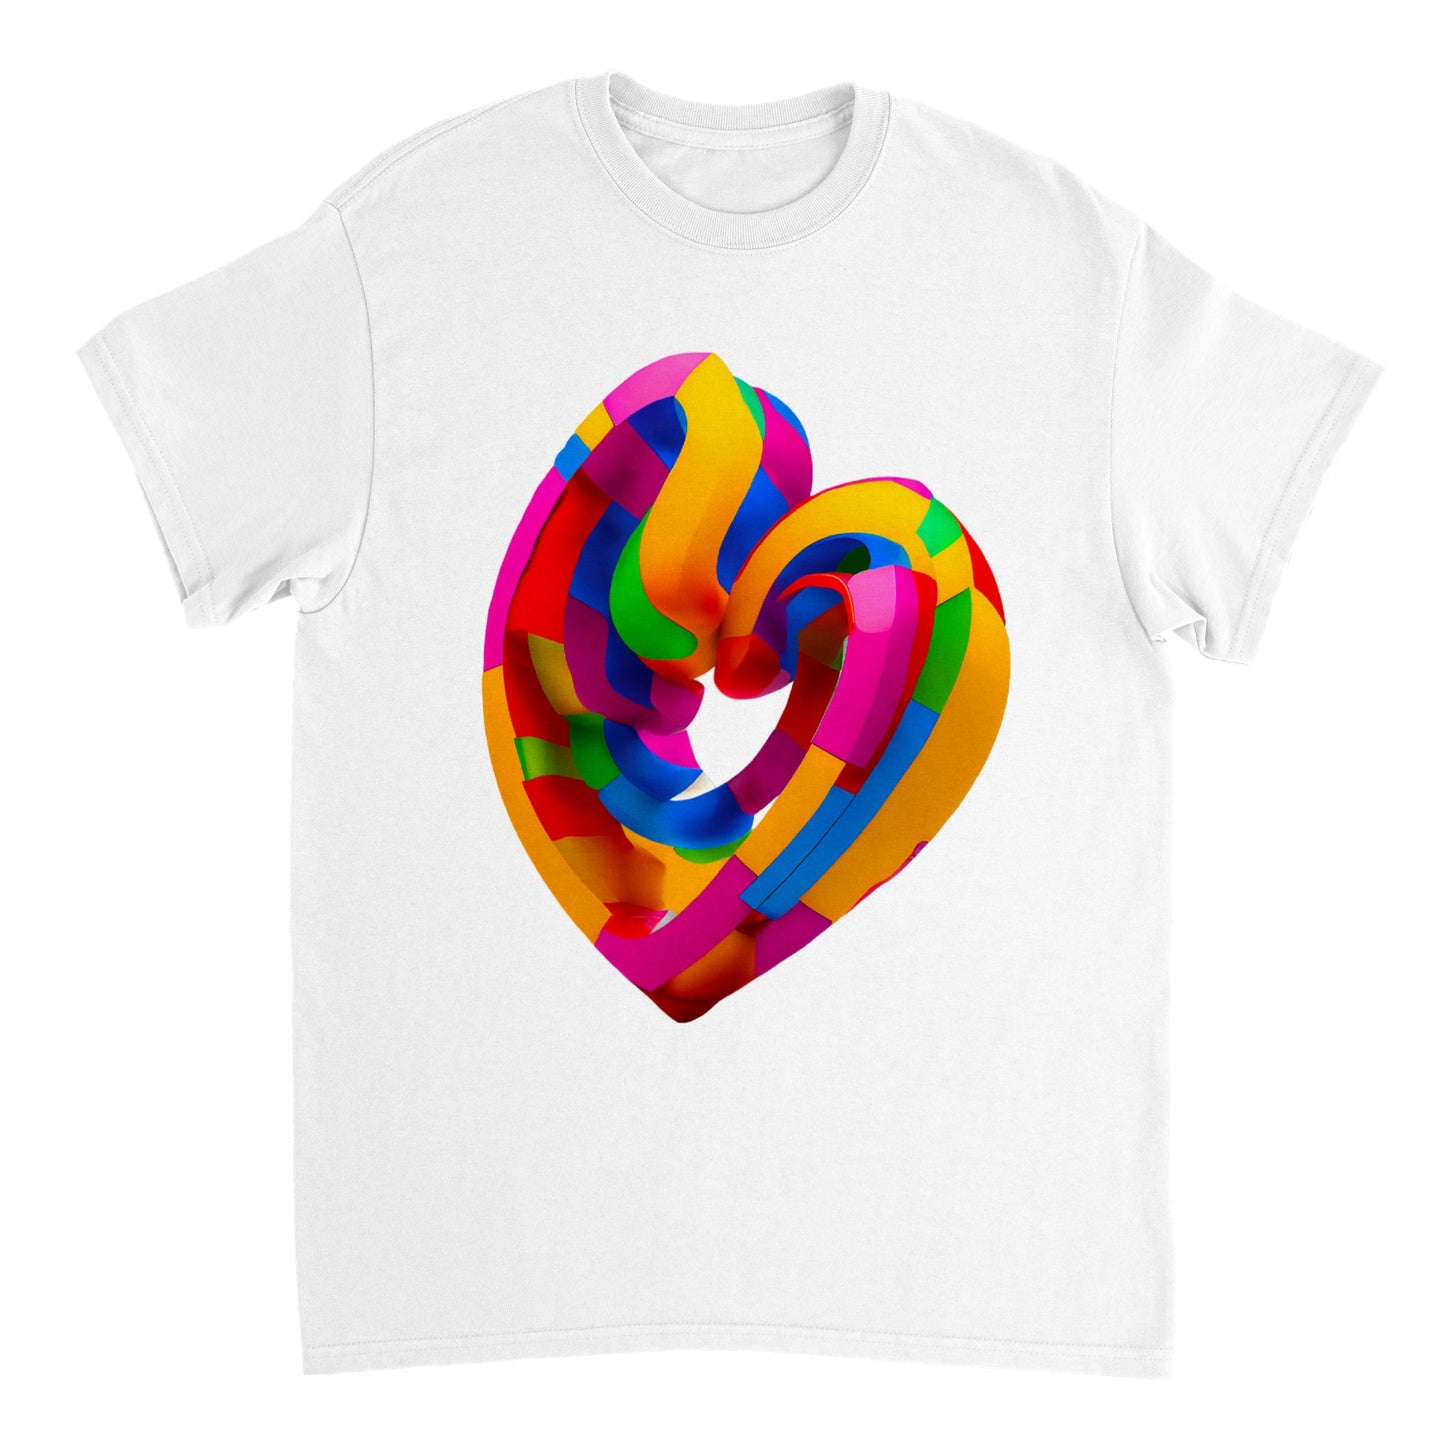 Love Heart - Heavyweight Unisex Crewneck T-shirt 20